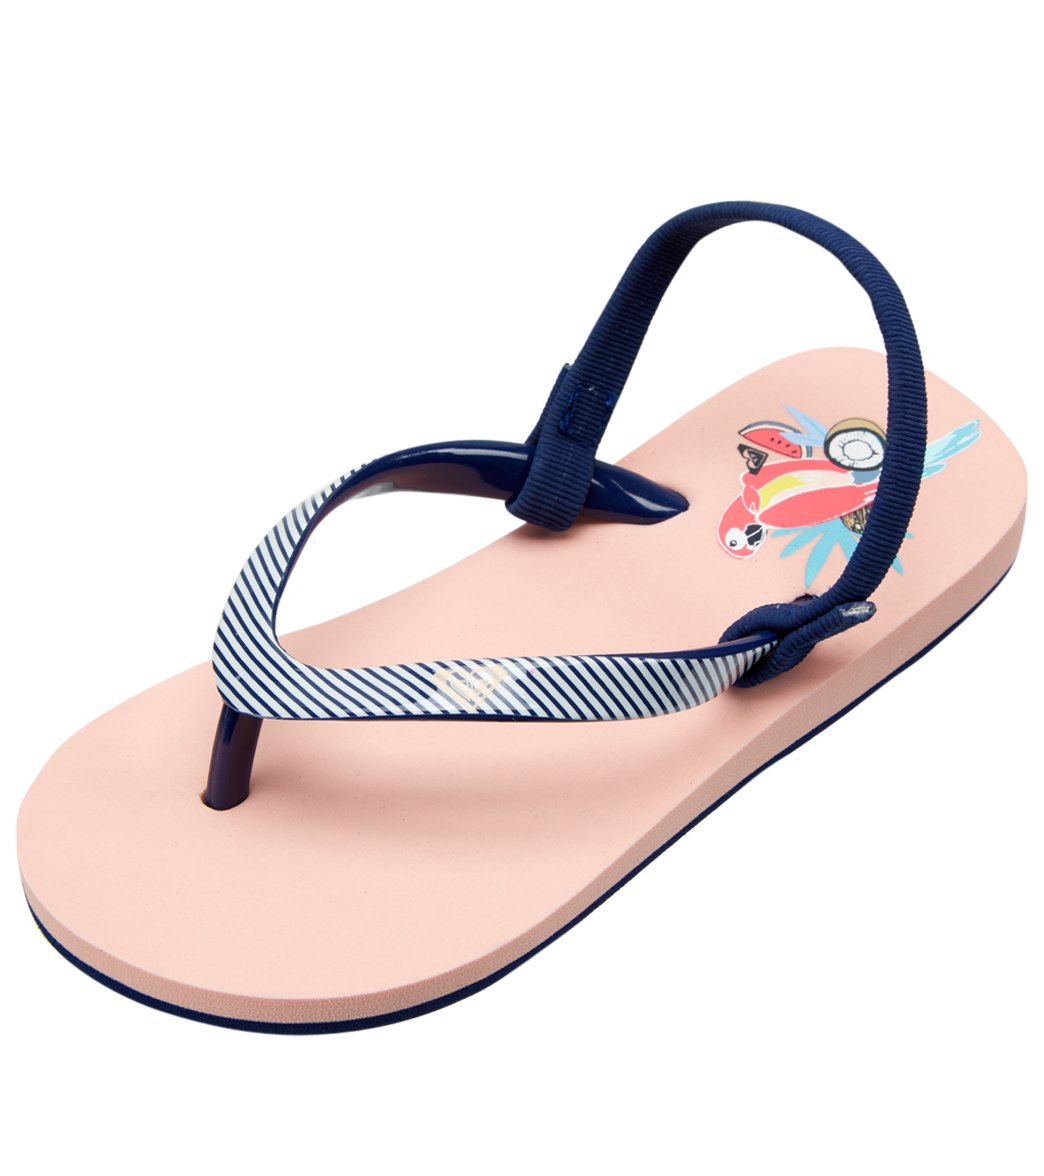 Roxy Girls' Pebbles Vi Sandals - Peach Cream 6 - Swimoutlet.com